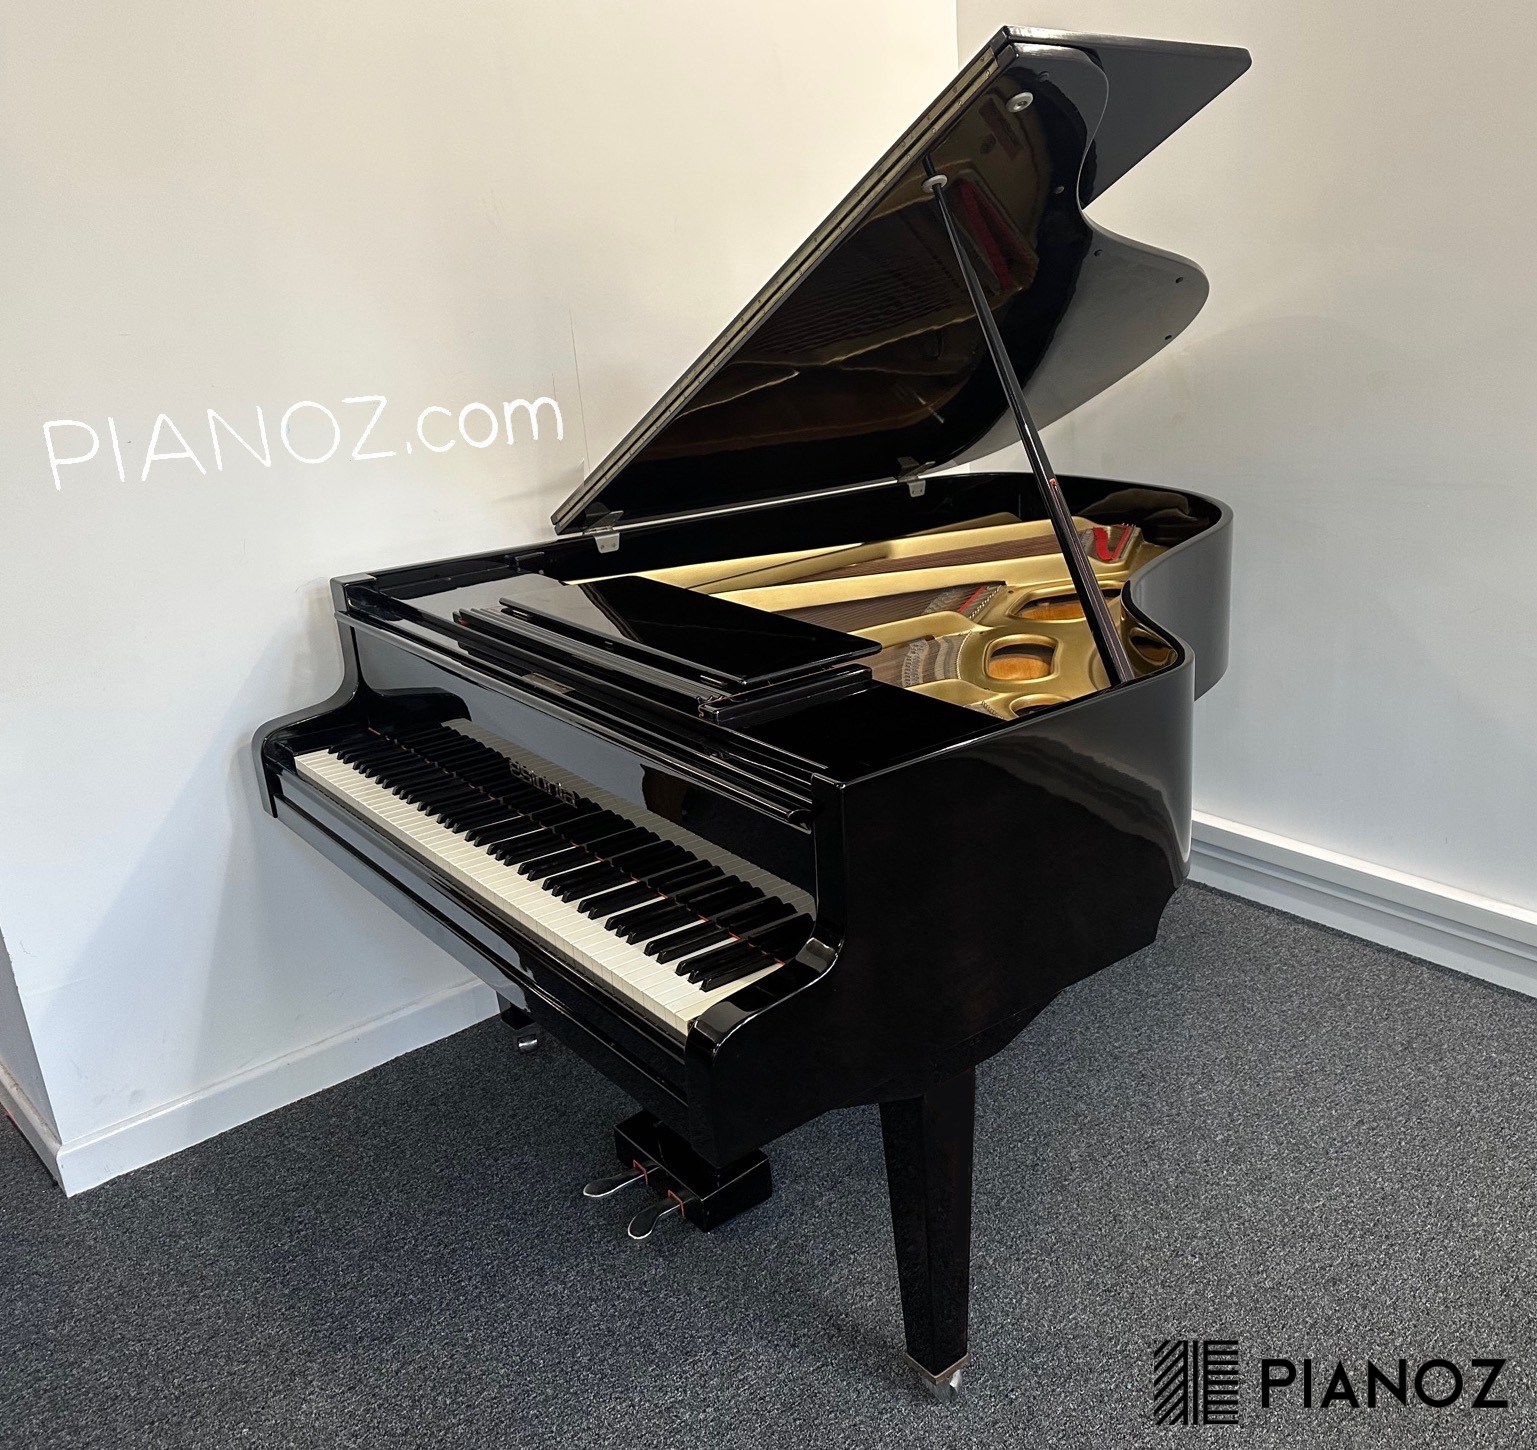 Estonia 6ft Black Gloss Grand Piano piano for sale in UK